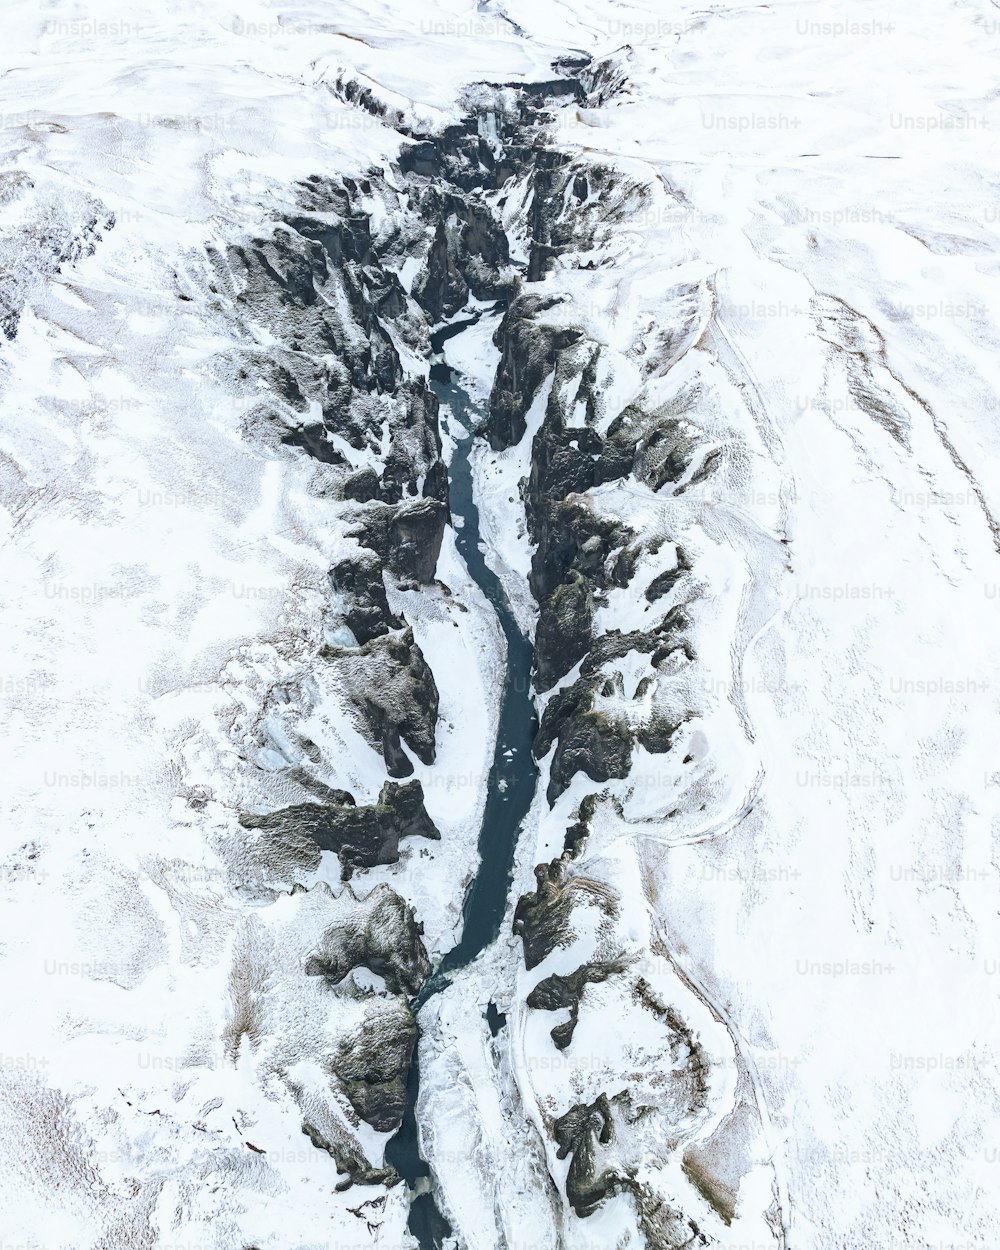 Luftaufnahme eines Flusses, der durch eine schneebedeckte Landschaft fließt